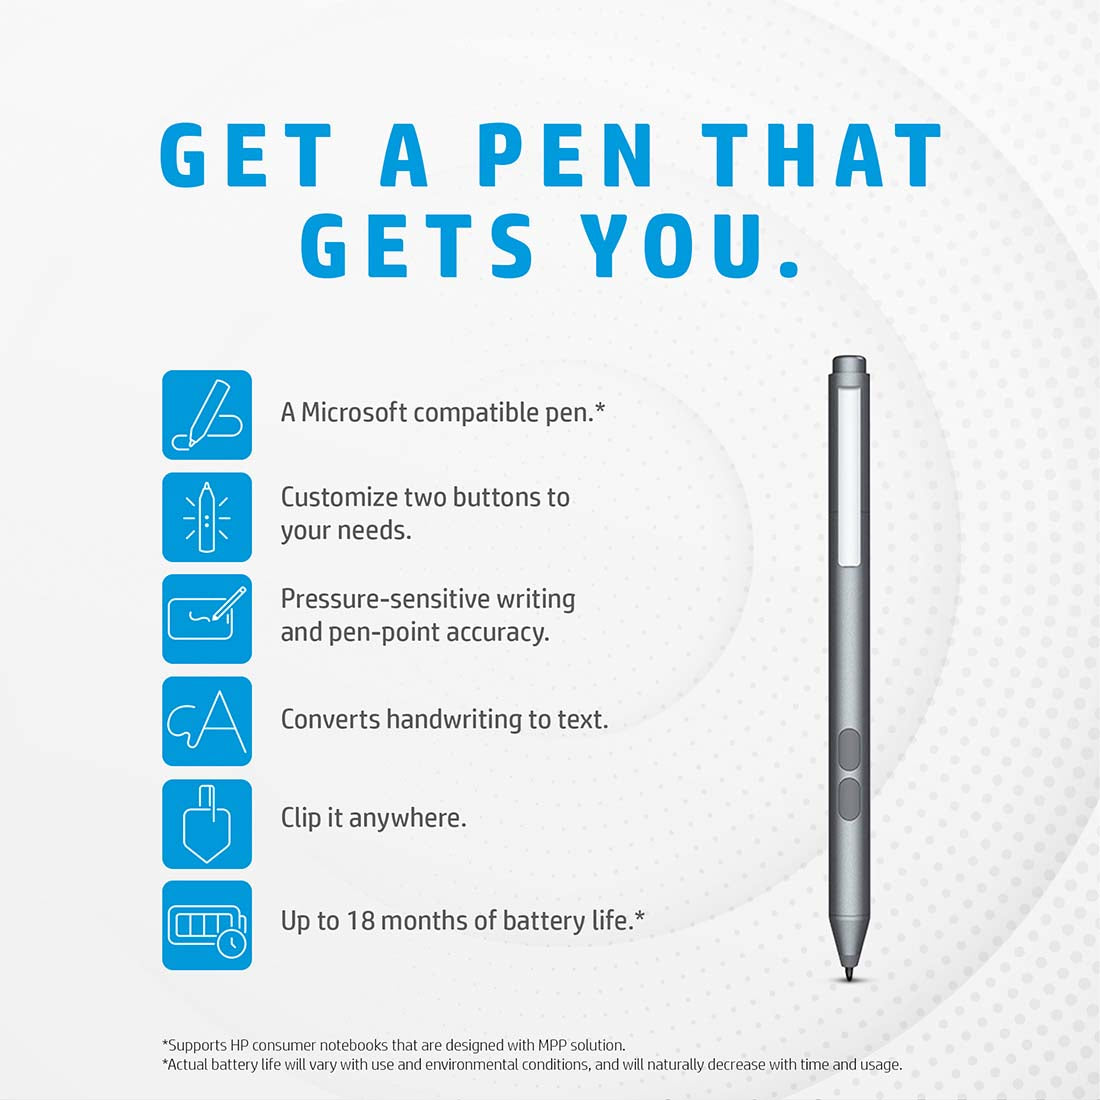 HP MPP 1.51 स्टाइलस पेन 18 महीने की बैटरी लाइफ और माइक्रोसॉफ्ट पेन प्रोटोकॉल के साथ